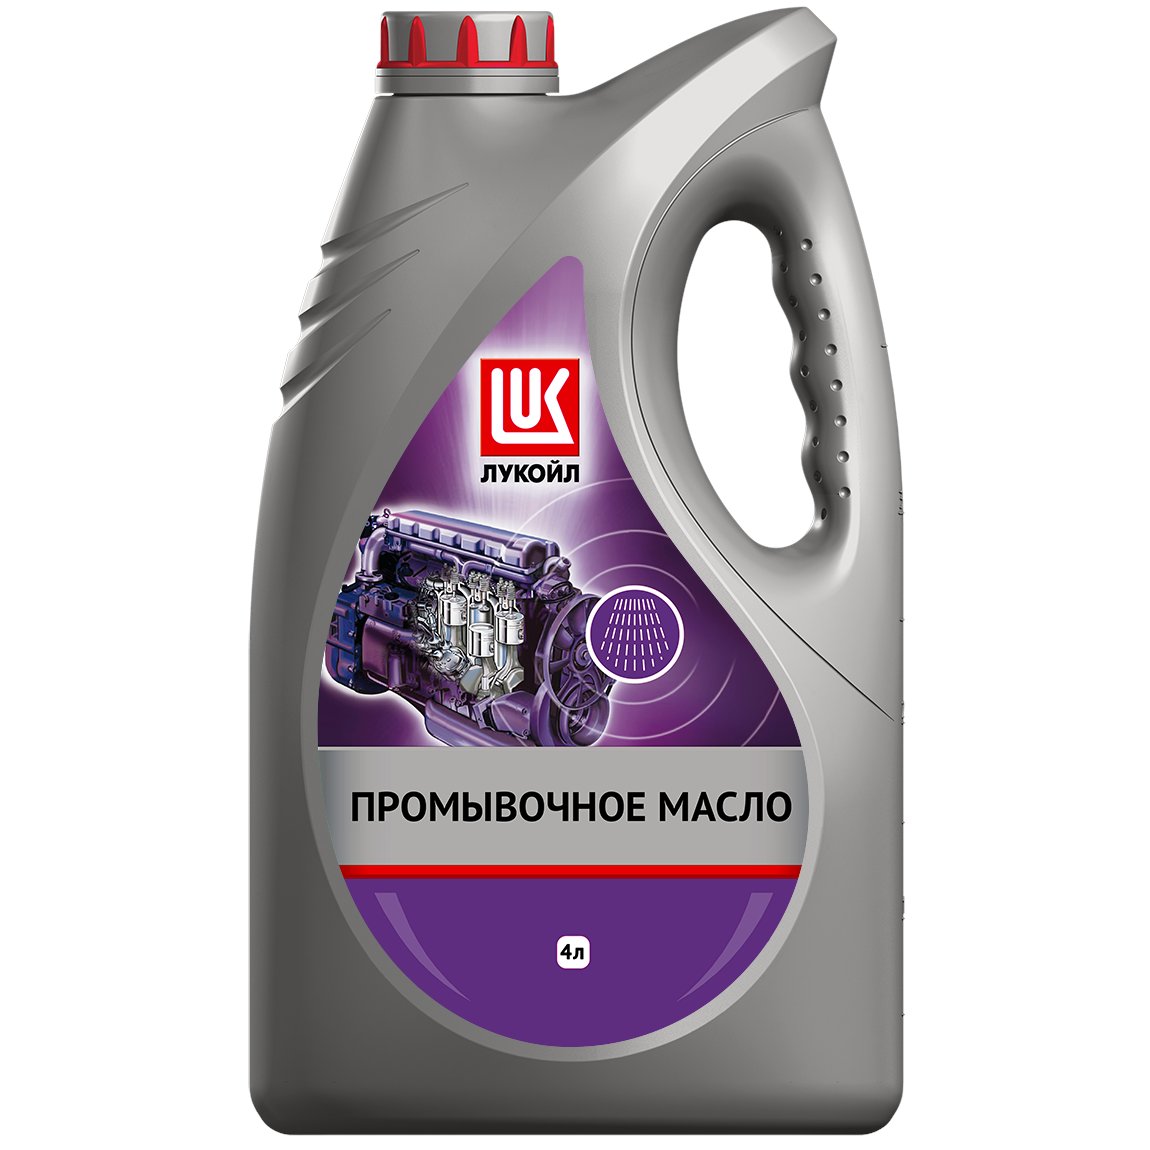 Масло промывочное Lukoil 4л.